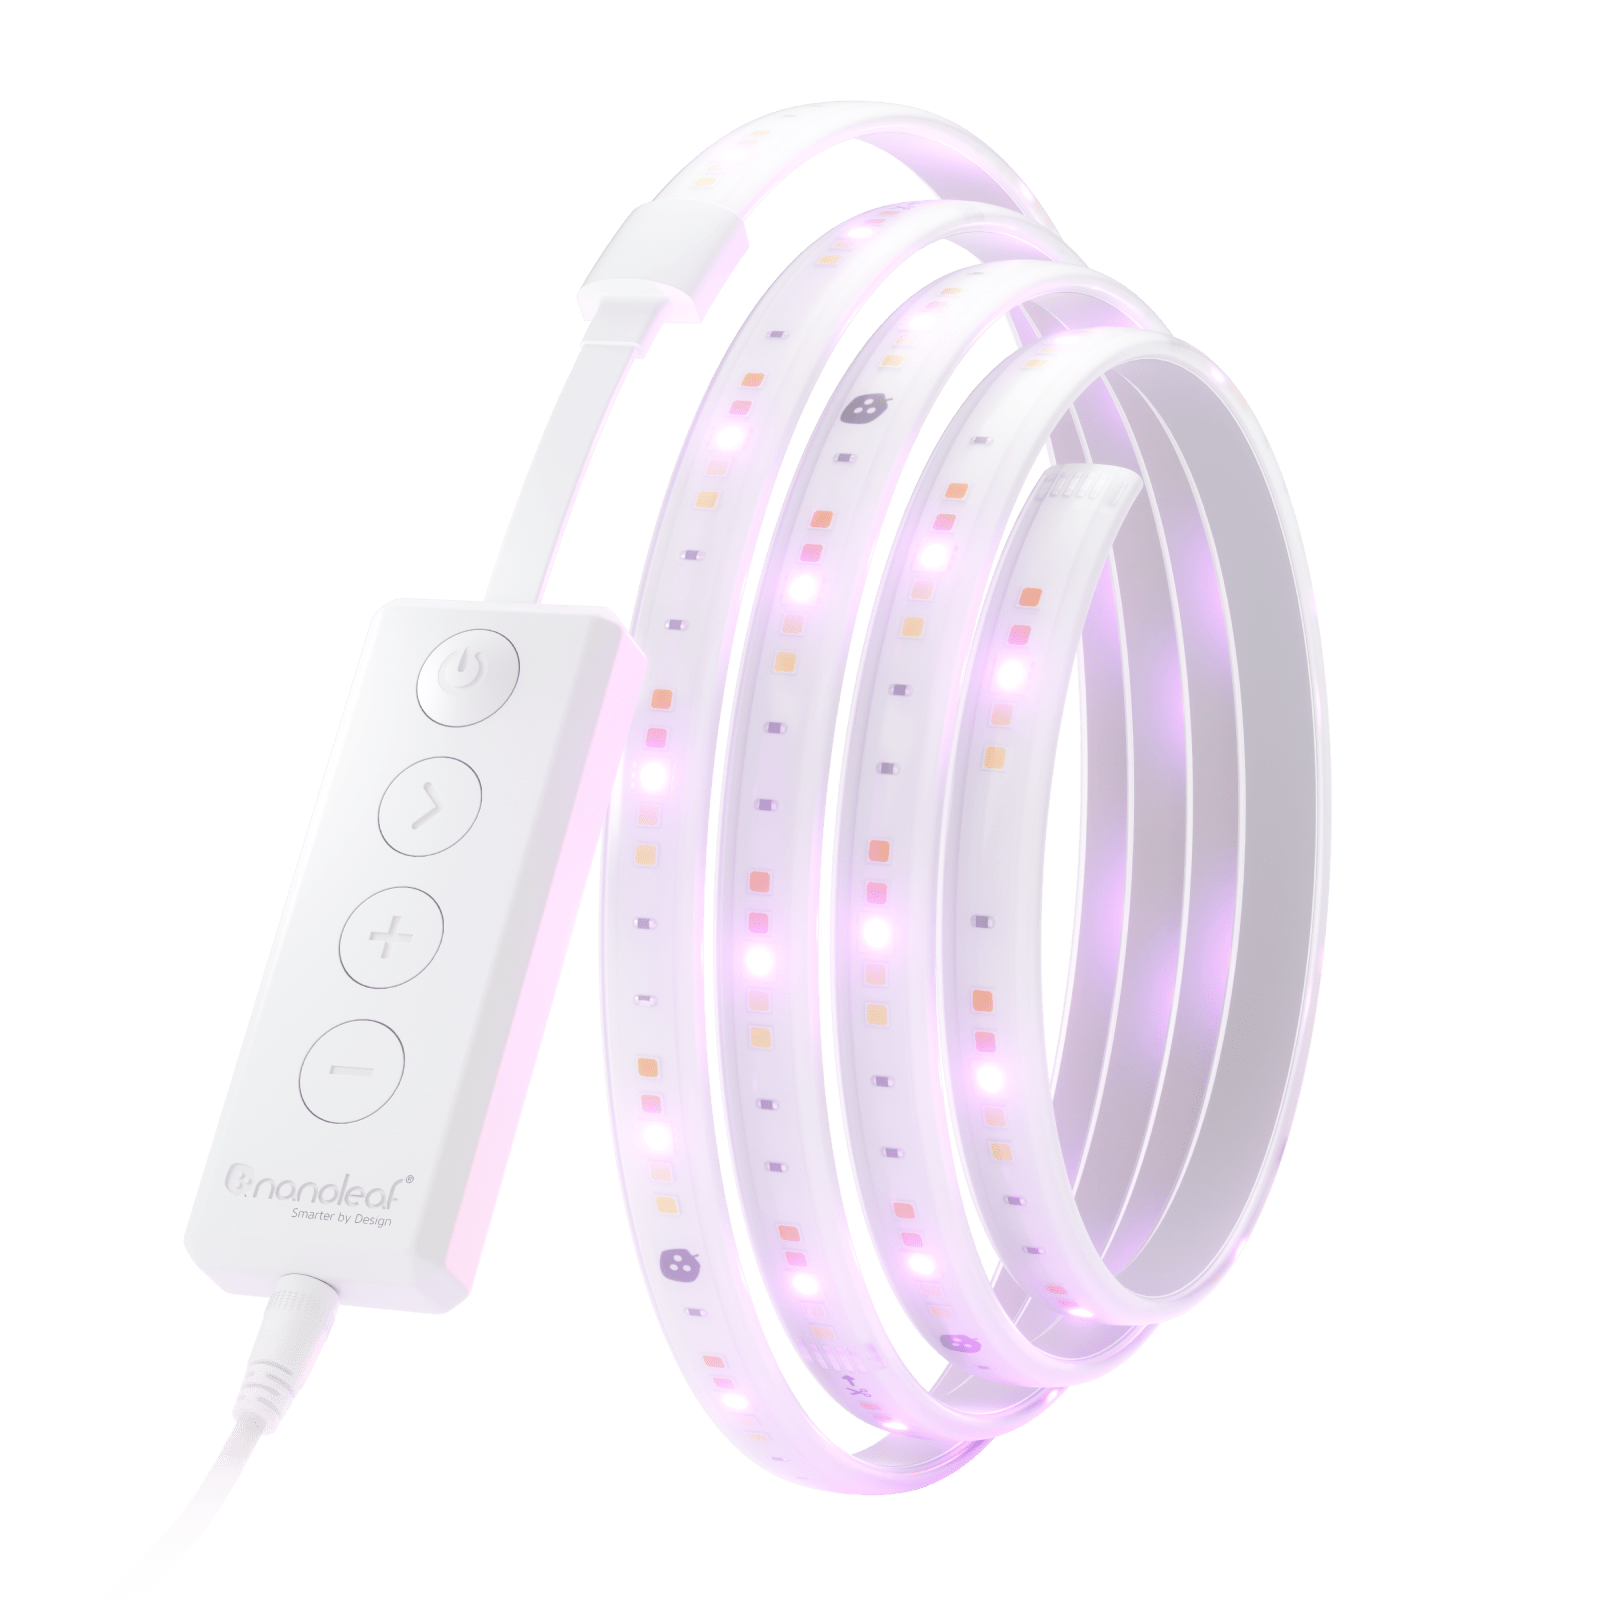 Nanoleaf Essentials Lightstrips, Smart LED Lights